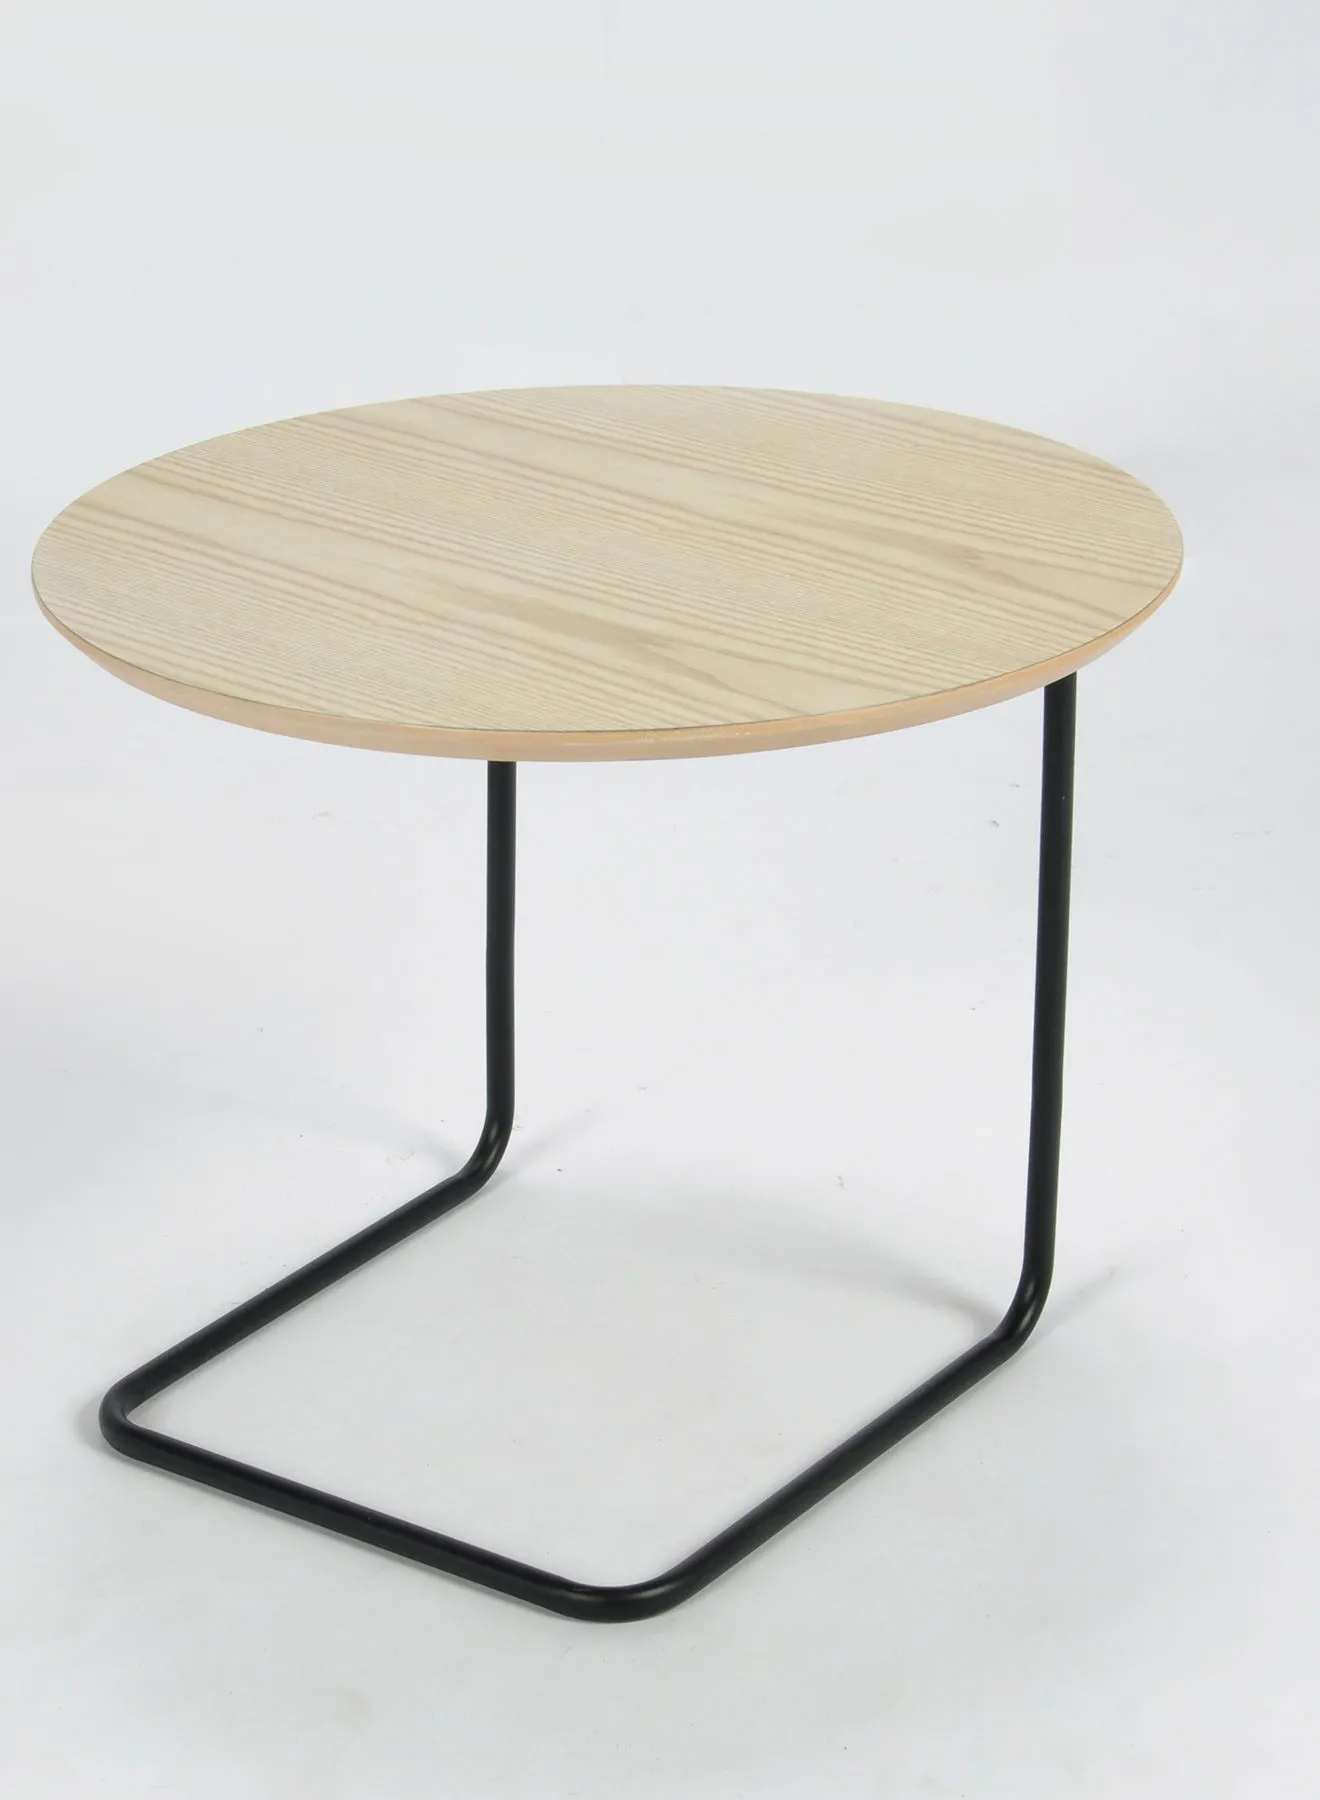 تبديل الطاولة الجانبية - باللون الطبيعي - تستخدم بجانب الأريكة كركن قهوة